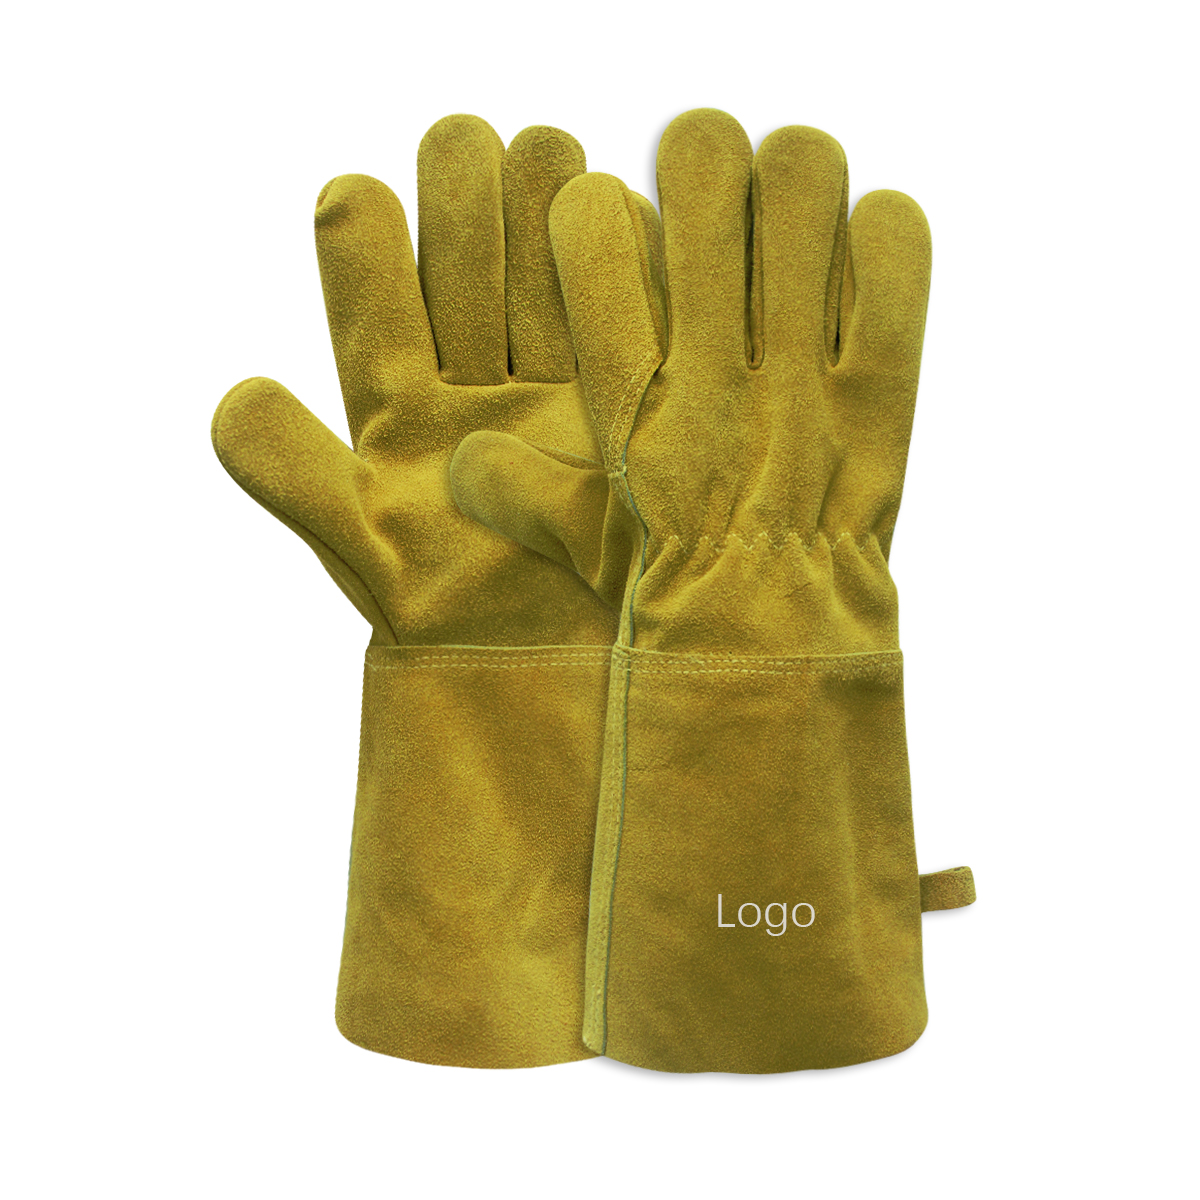 Пальчаткі Mig Welding Welder Tig Gloves Guantes De Soldadura Прадукт Каровіная скура Новы вогнеўстойлівы